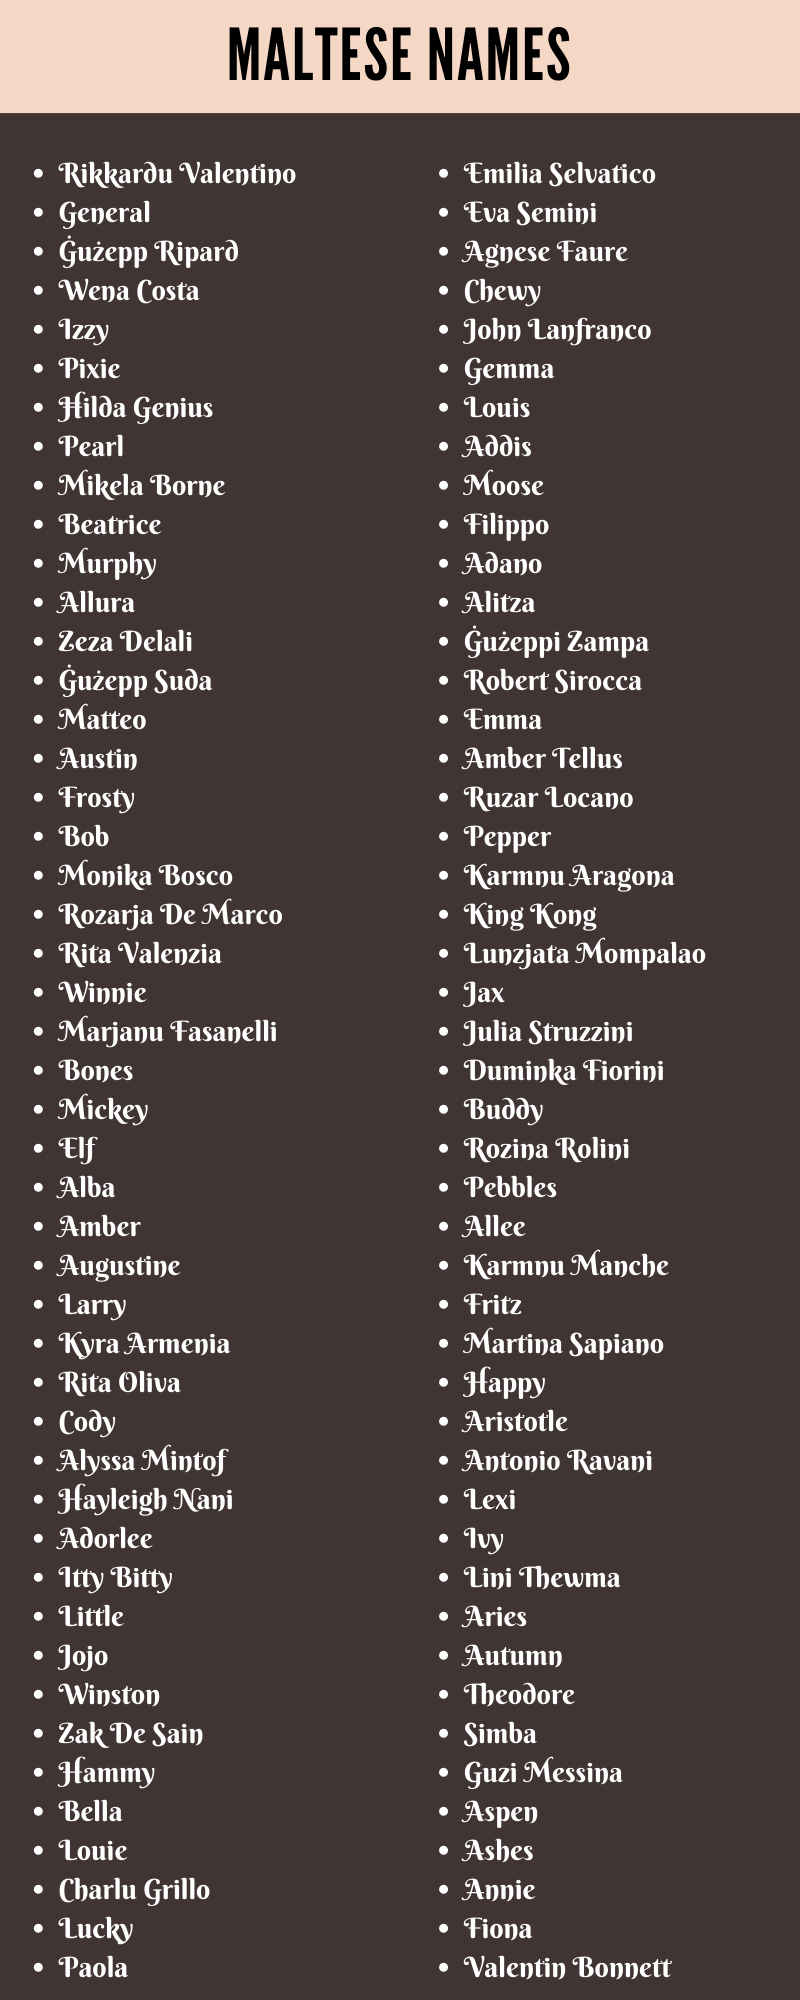 Maltese Names